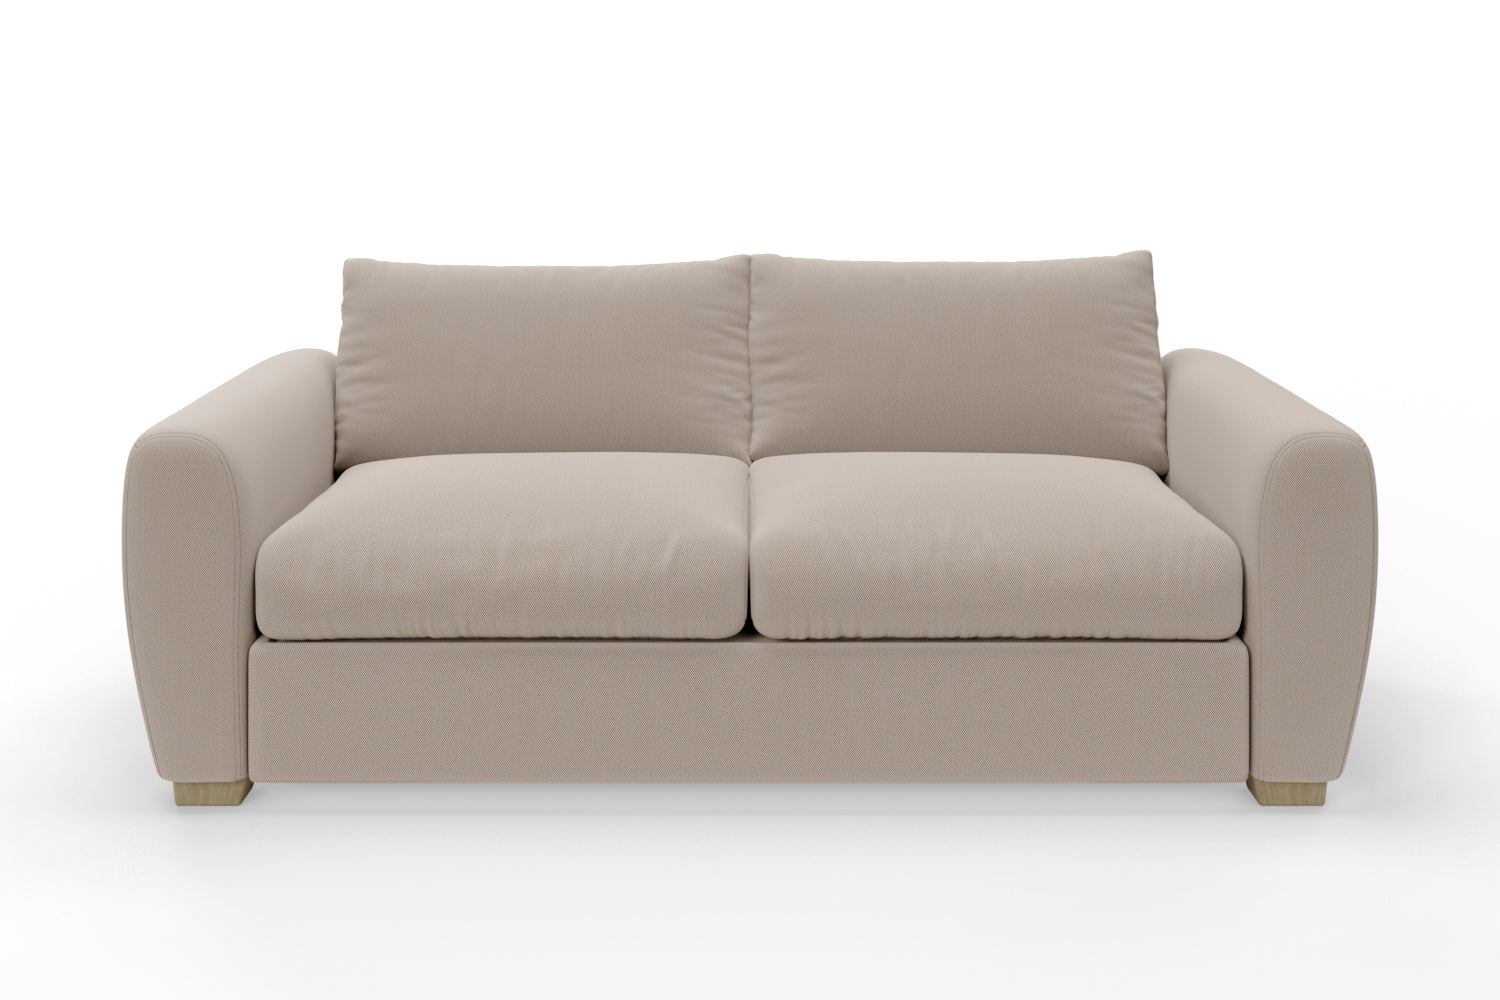 The Cloud Sundae - 3 Seater Sofa - Oatmeal